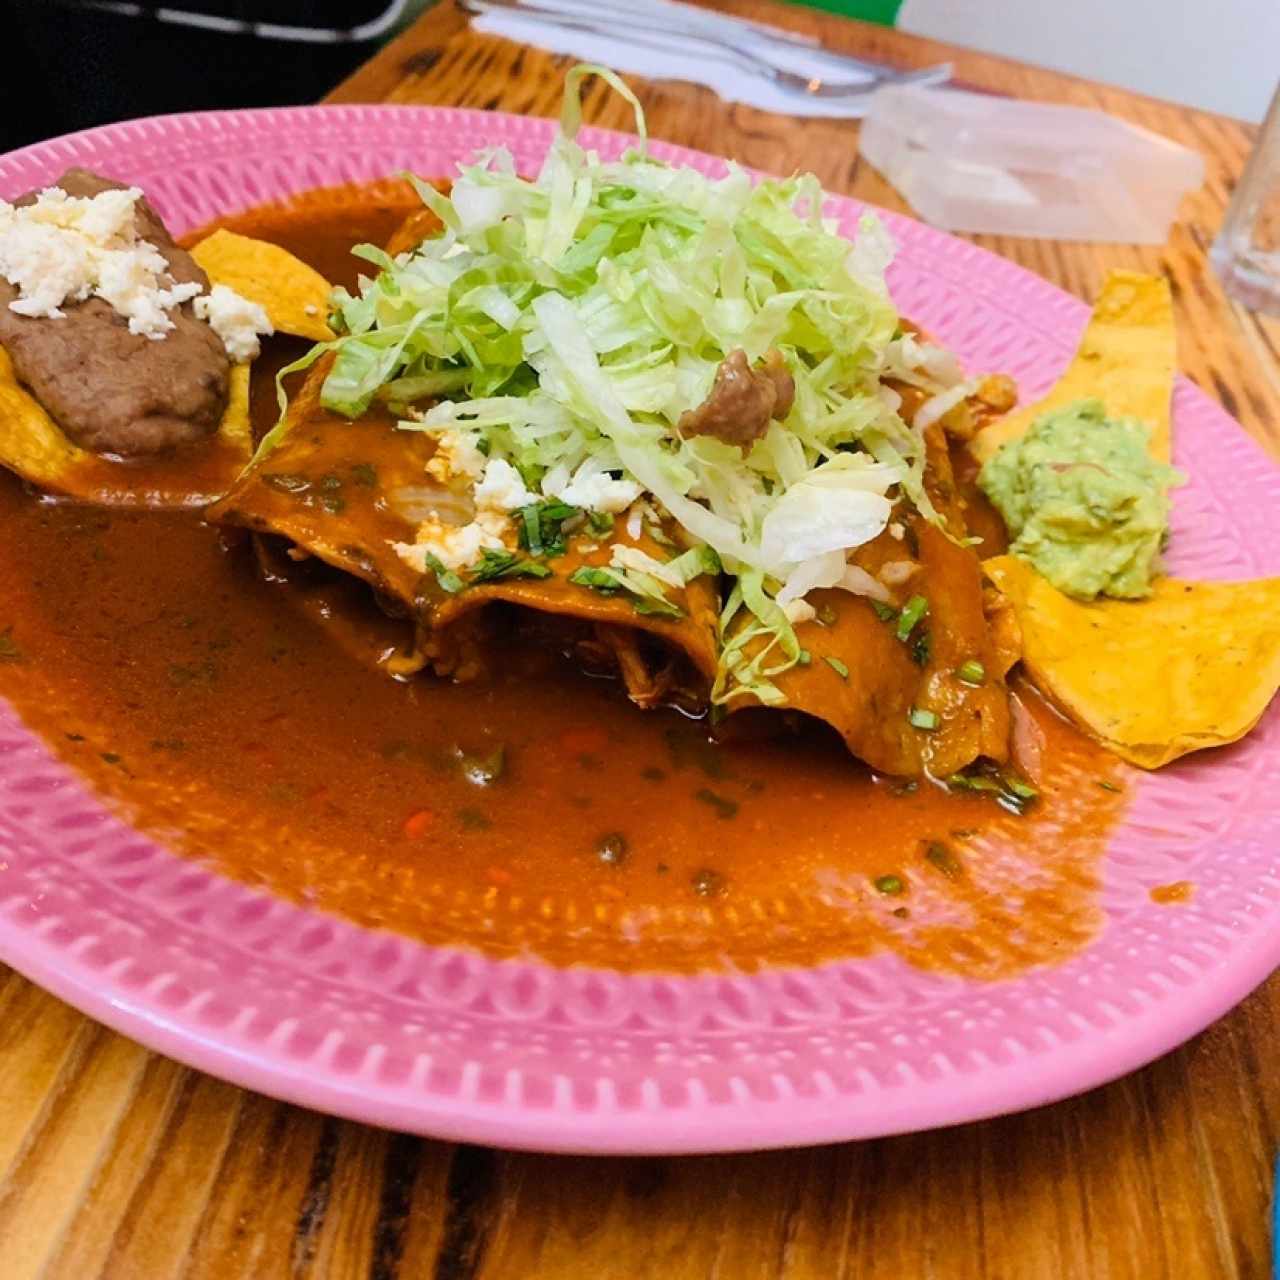 Enchilada mixta